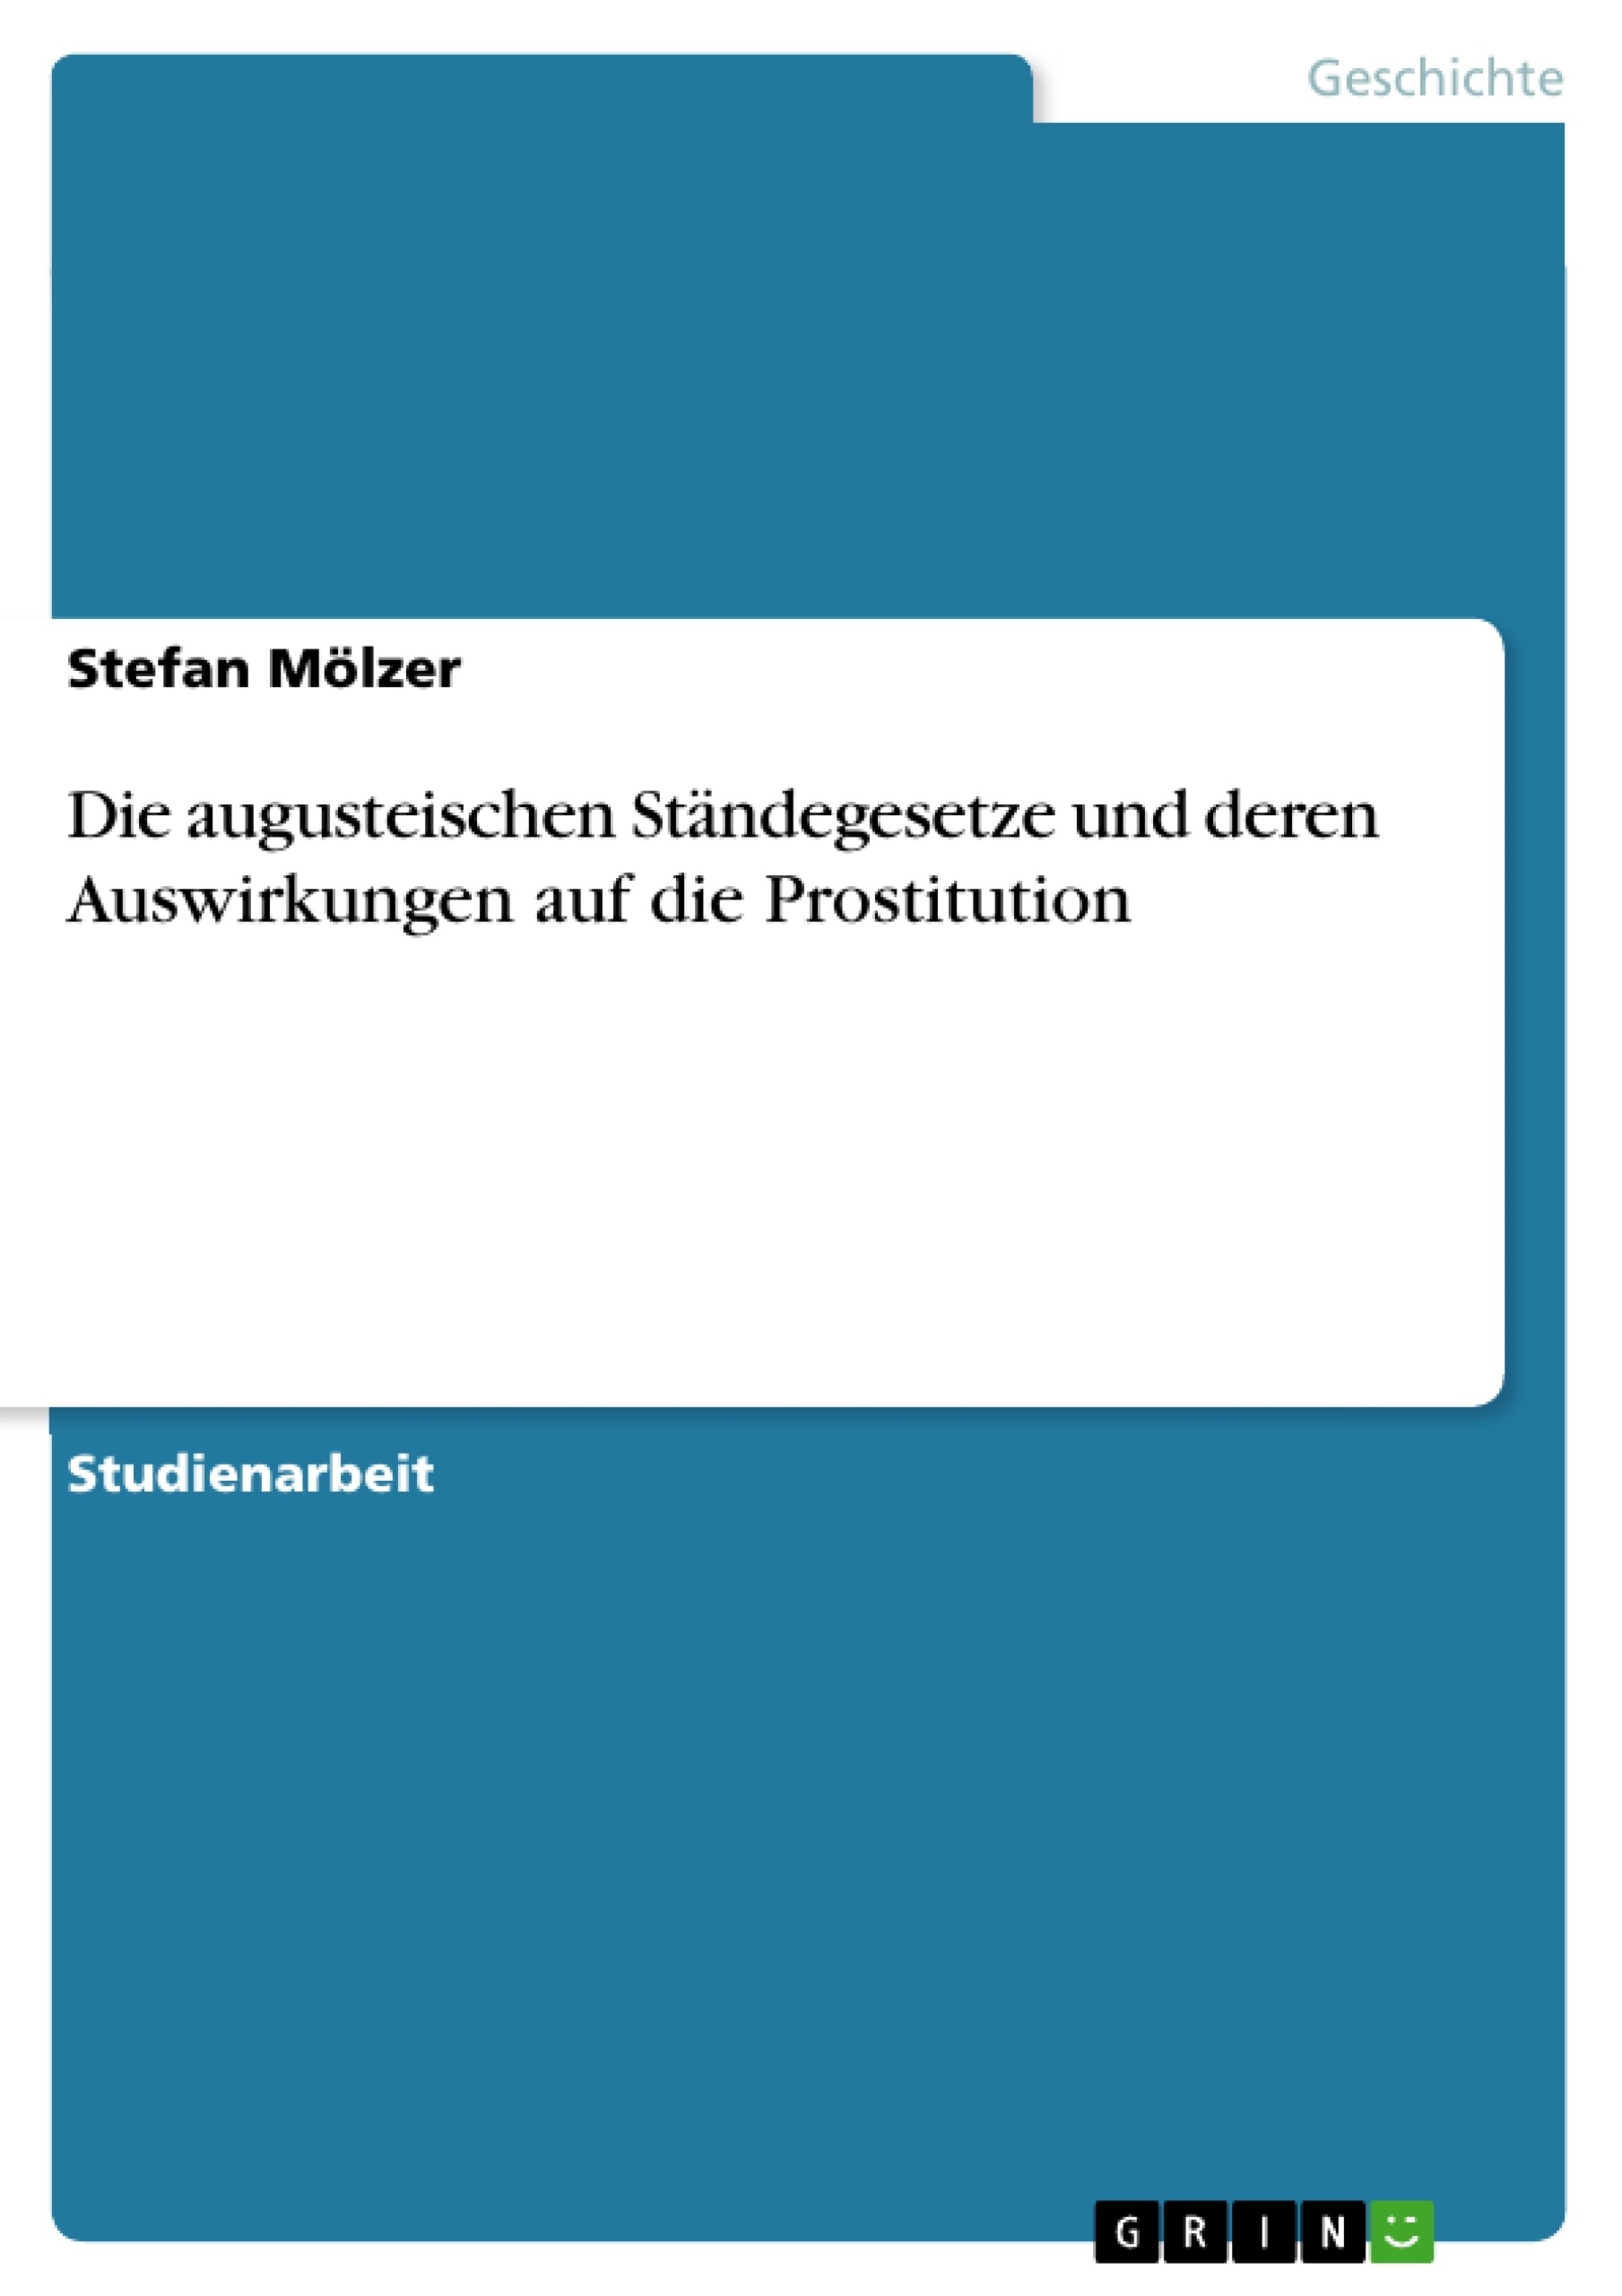 Title: Die augusteischen Ständegesetze und deren Auswirkungen auf die Prostitution